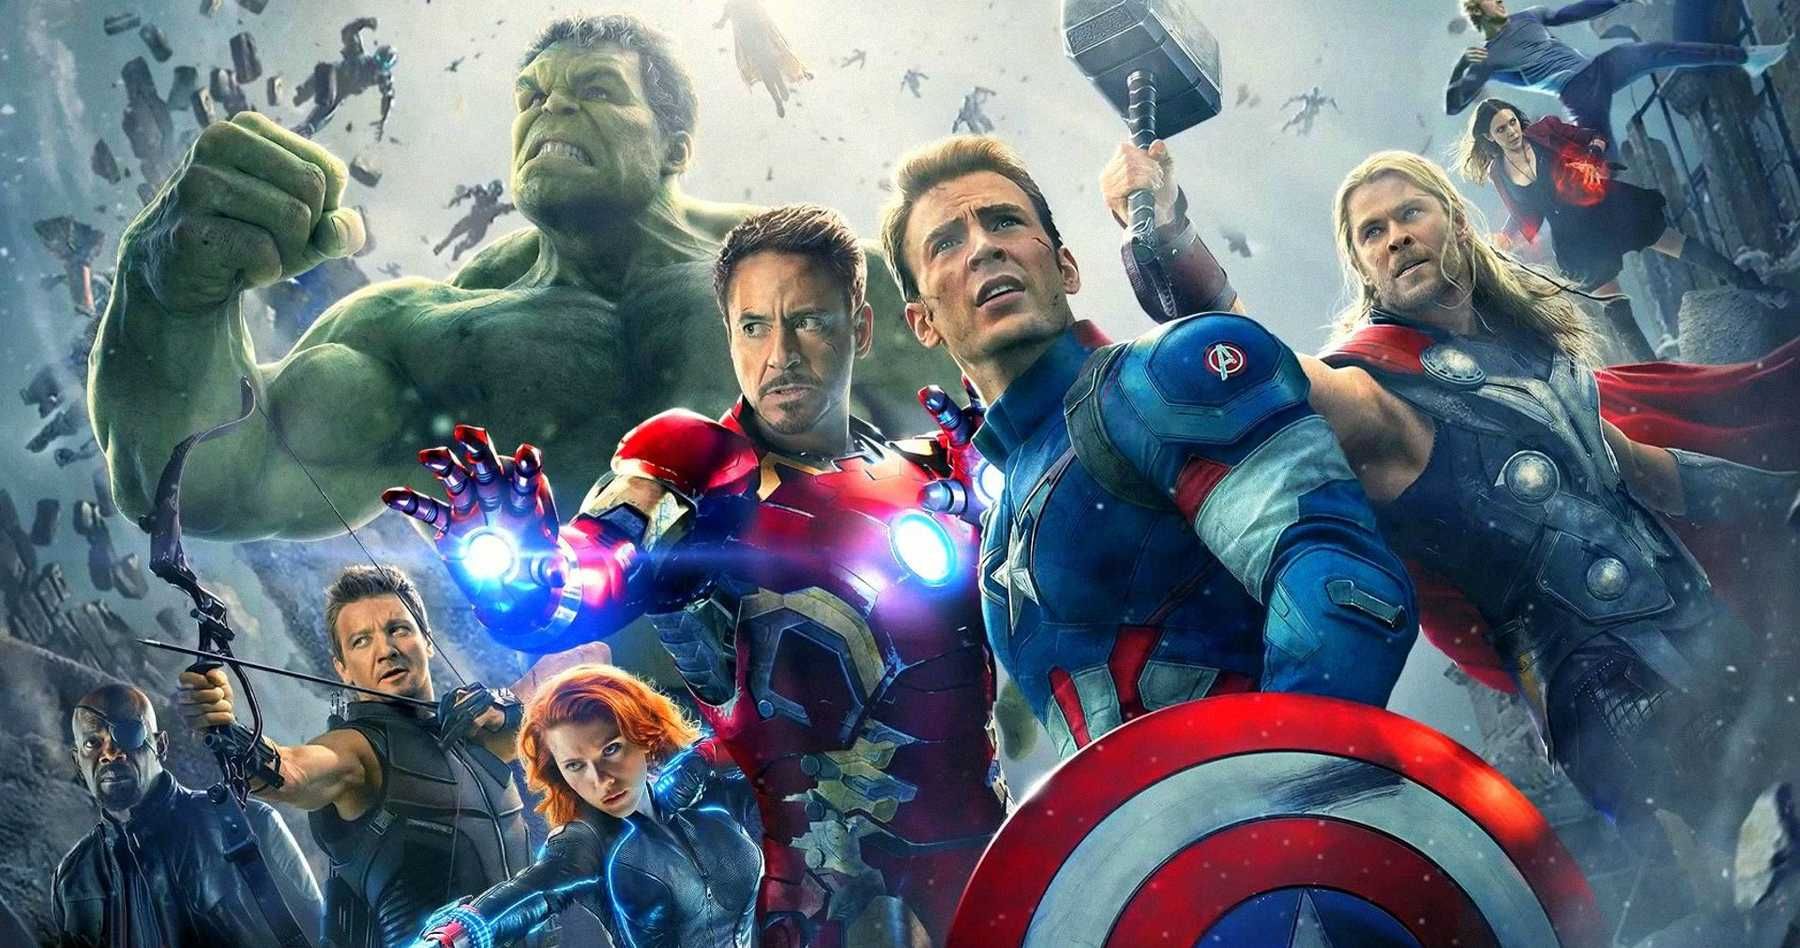 Avengers 2 Cast Appearances Announced on ABC